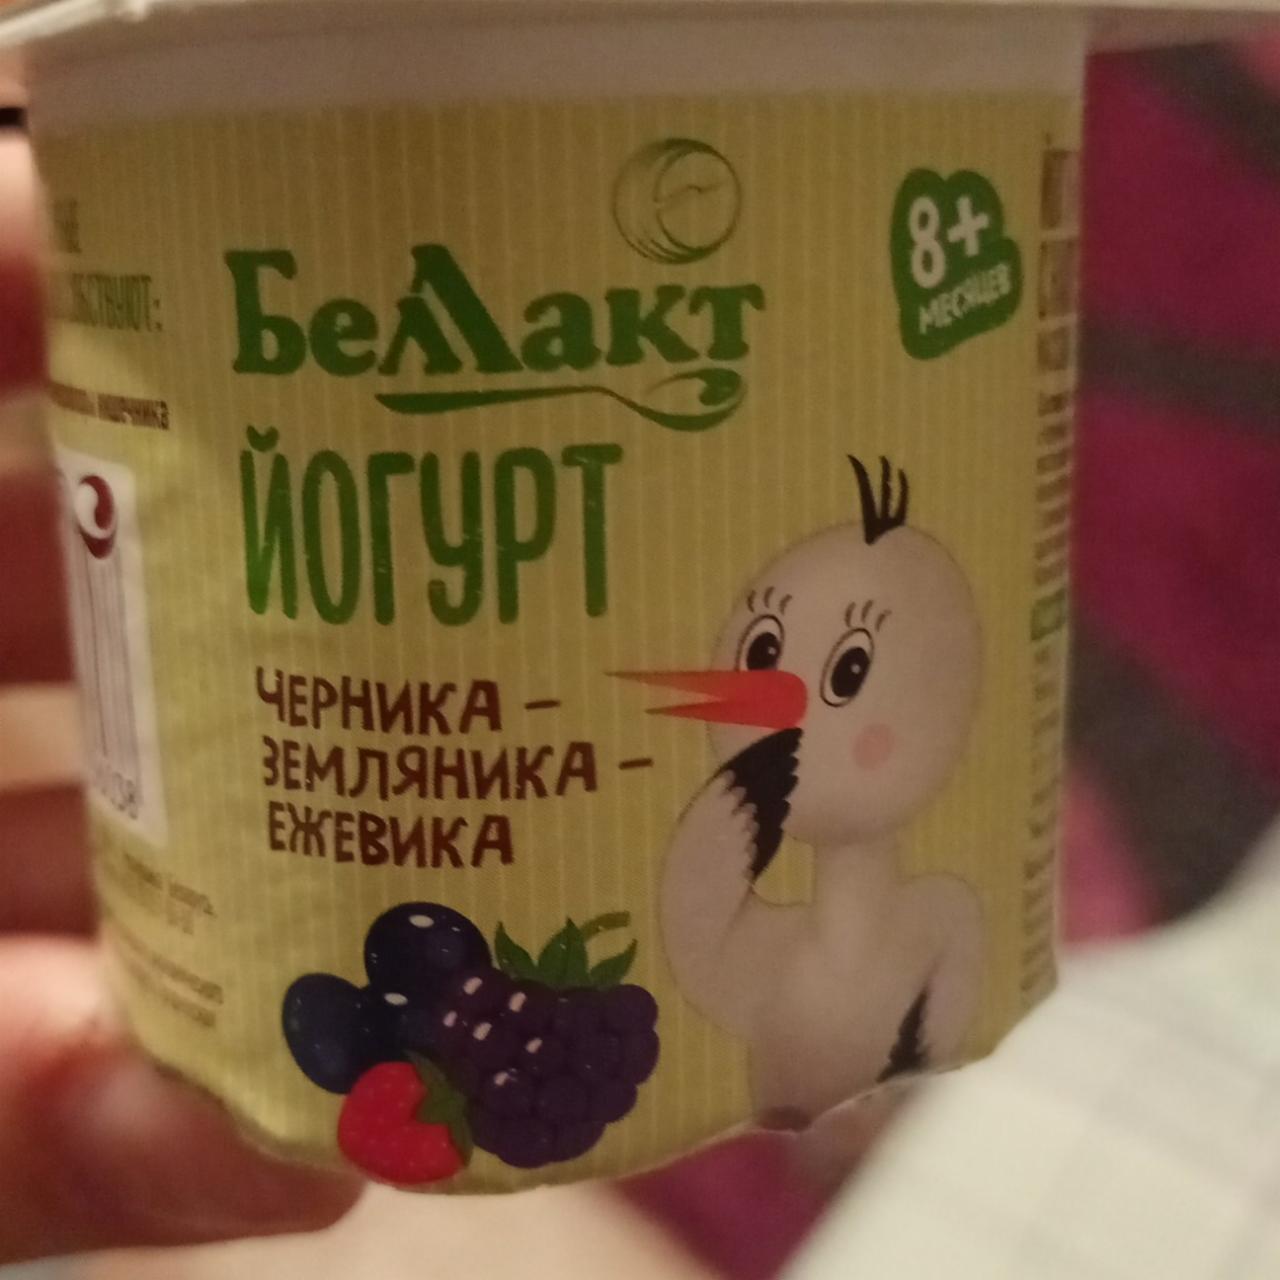 Фото - йогурт для детей раннего возраста черника-земляника-ежевика Беллакт